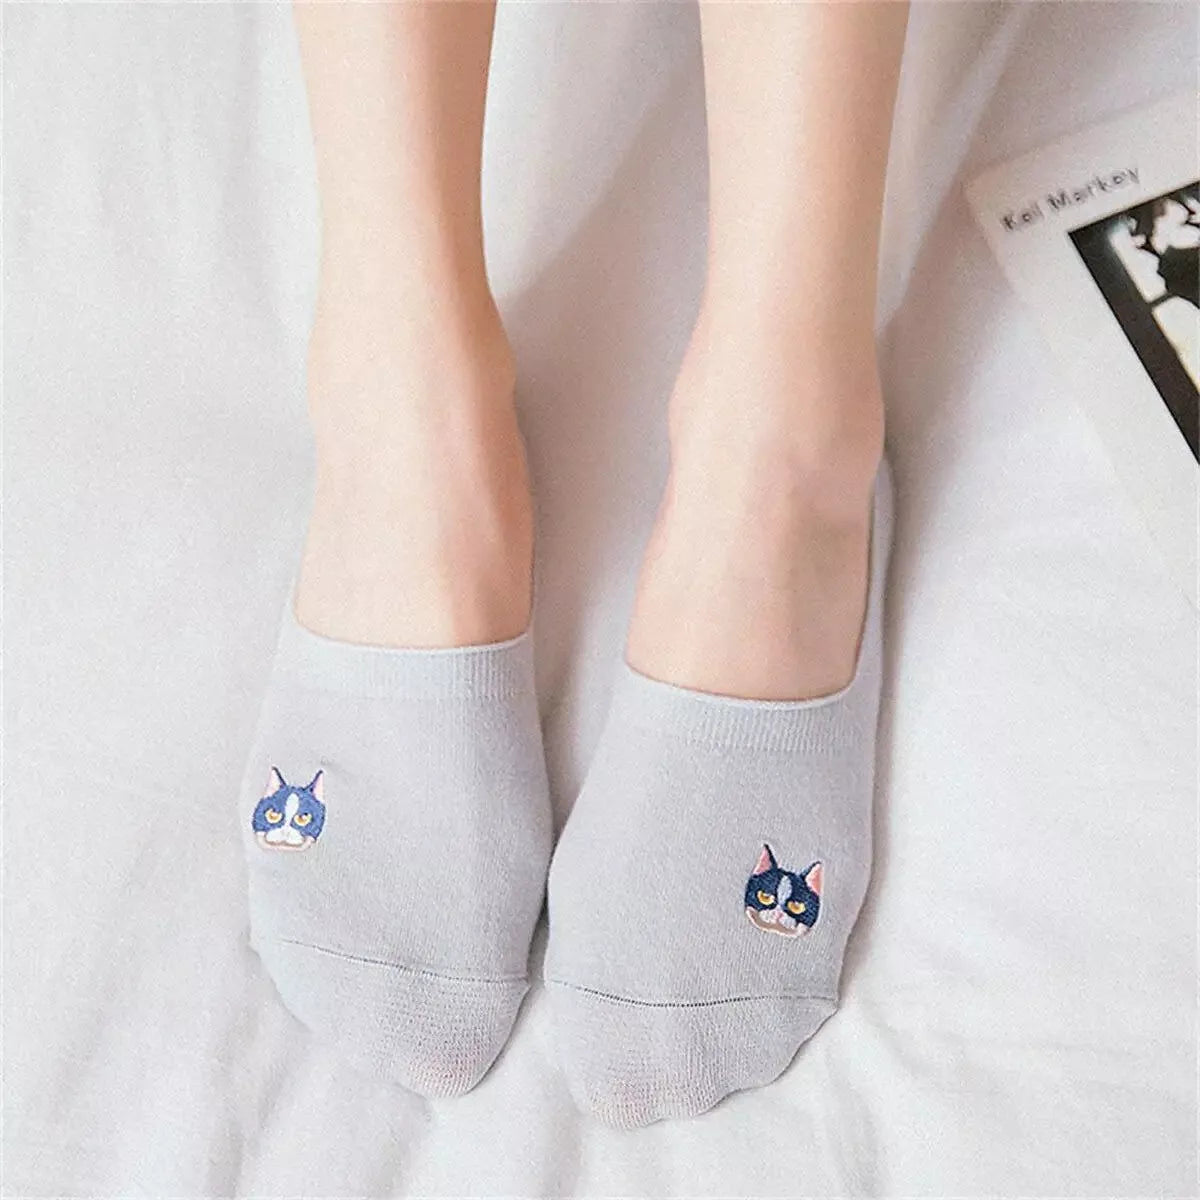 Socquettes invisibles avec motif de chat coloré - Collection Tites Chaussettes